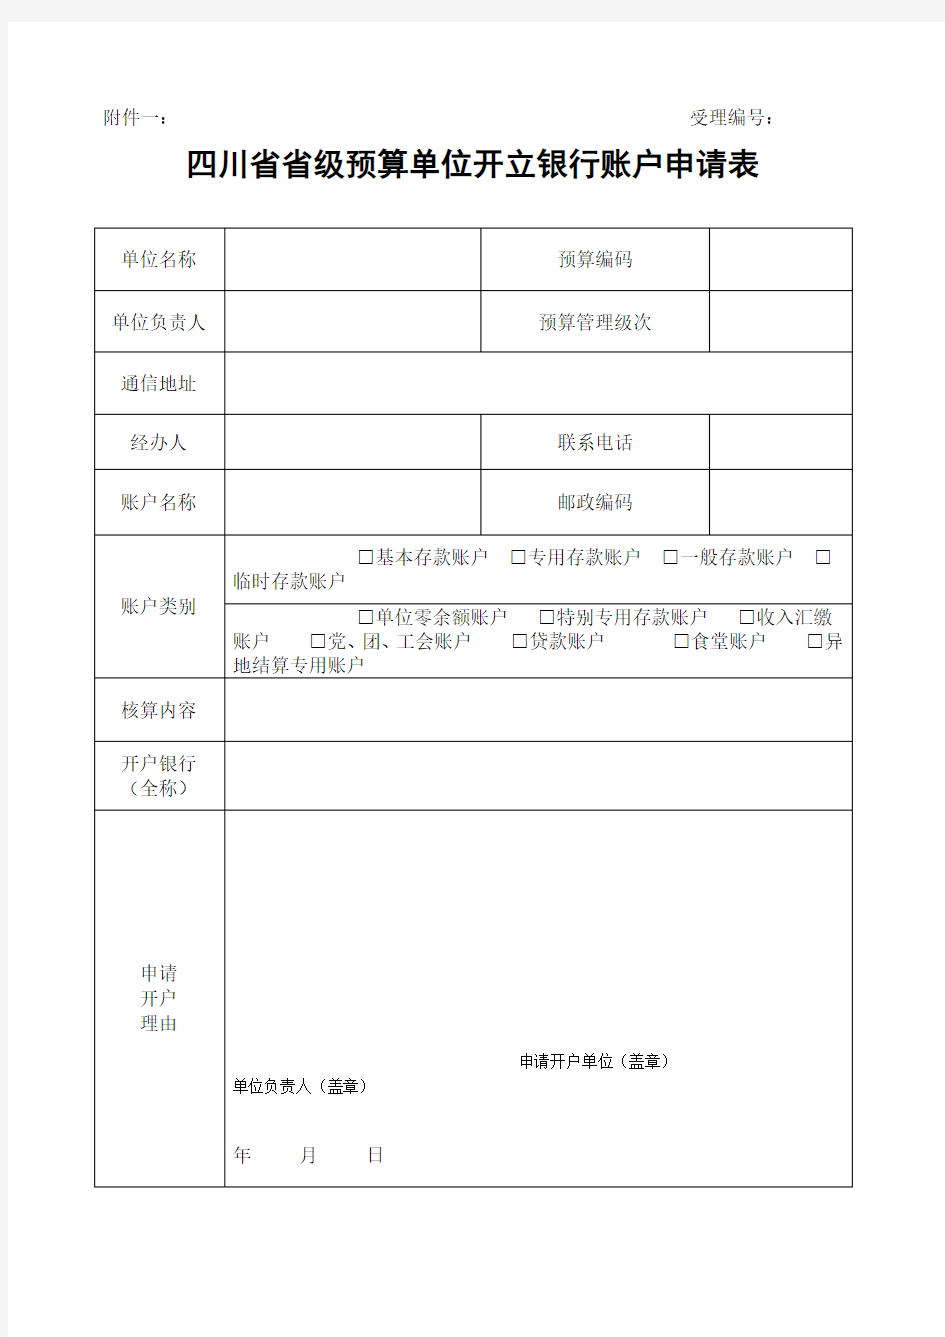 四川省省级预算单位开立银行账户申请表